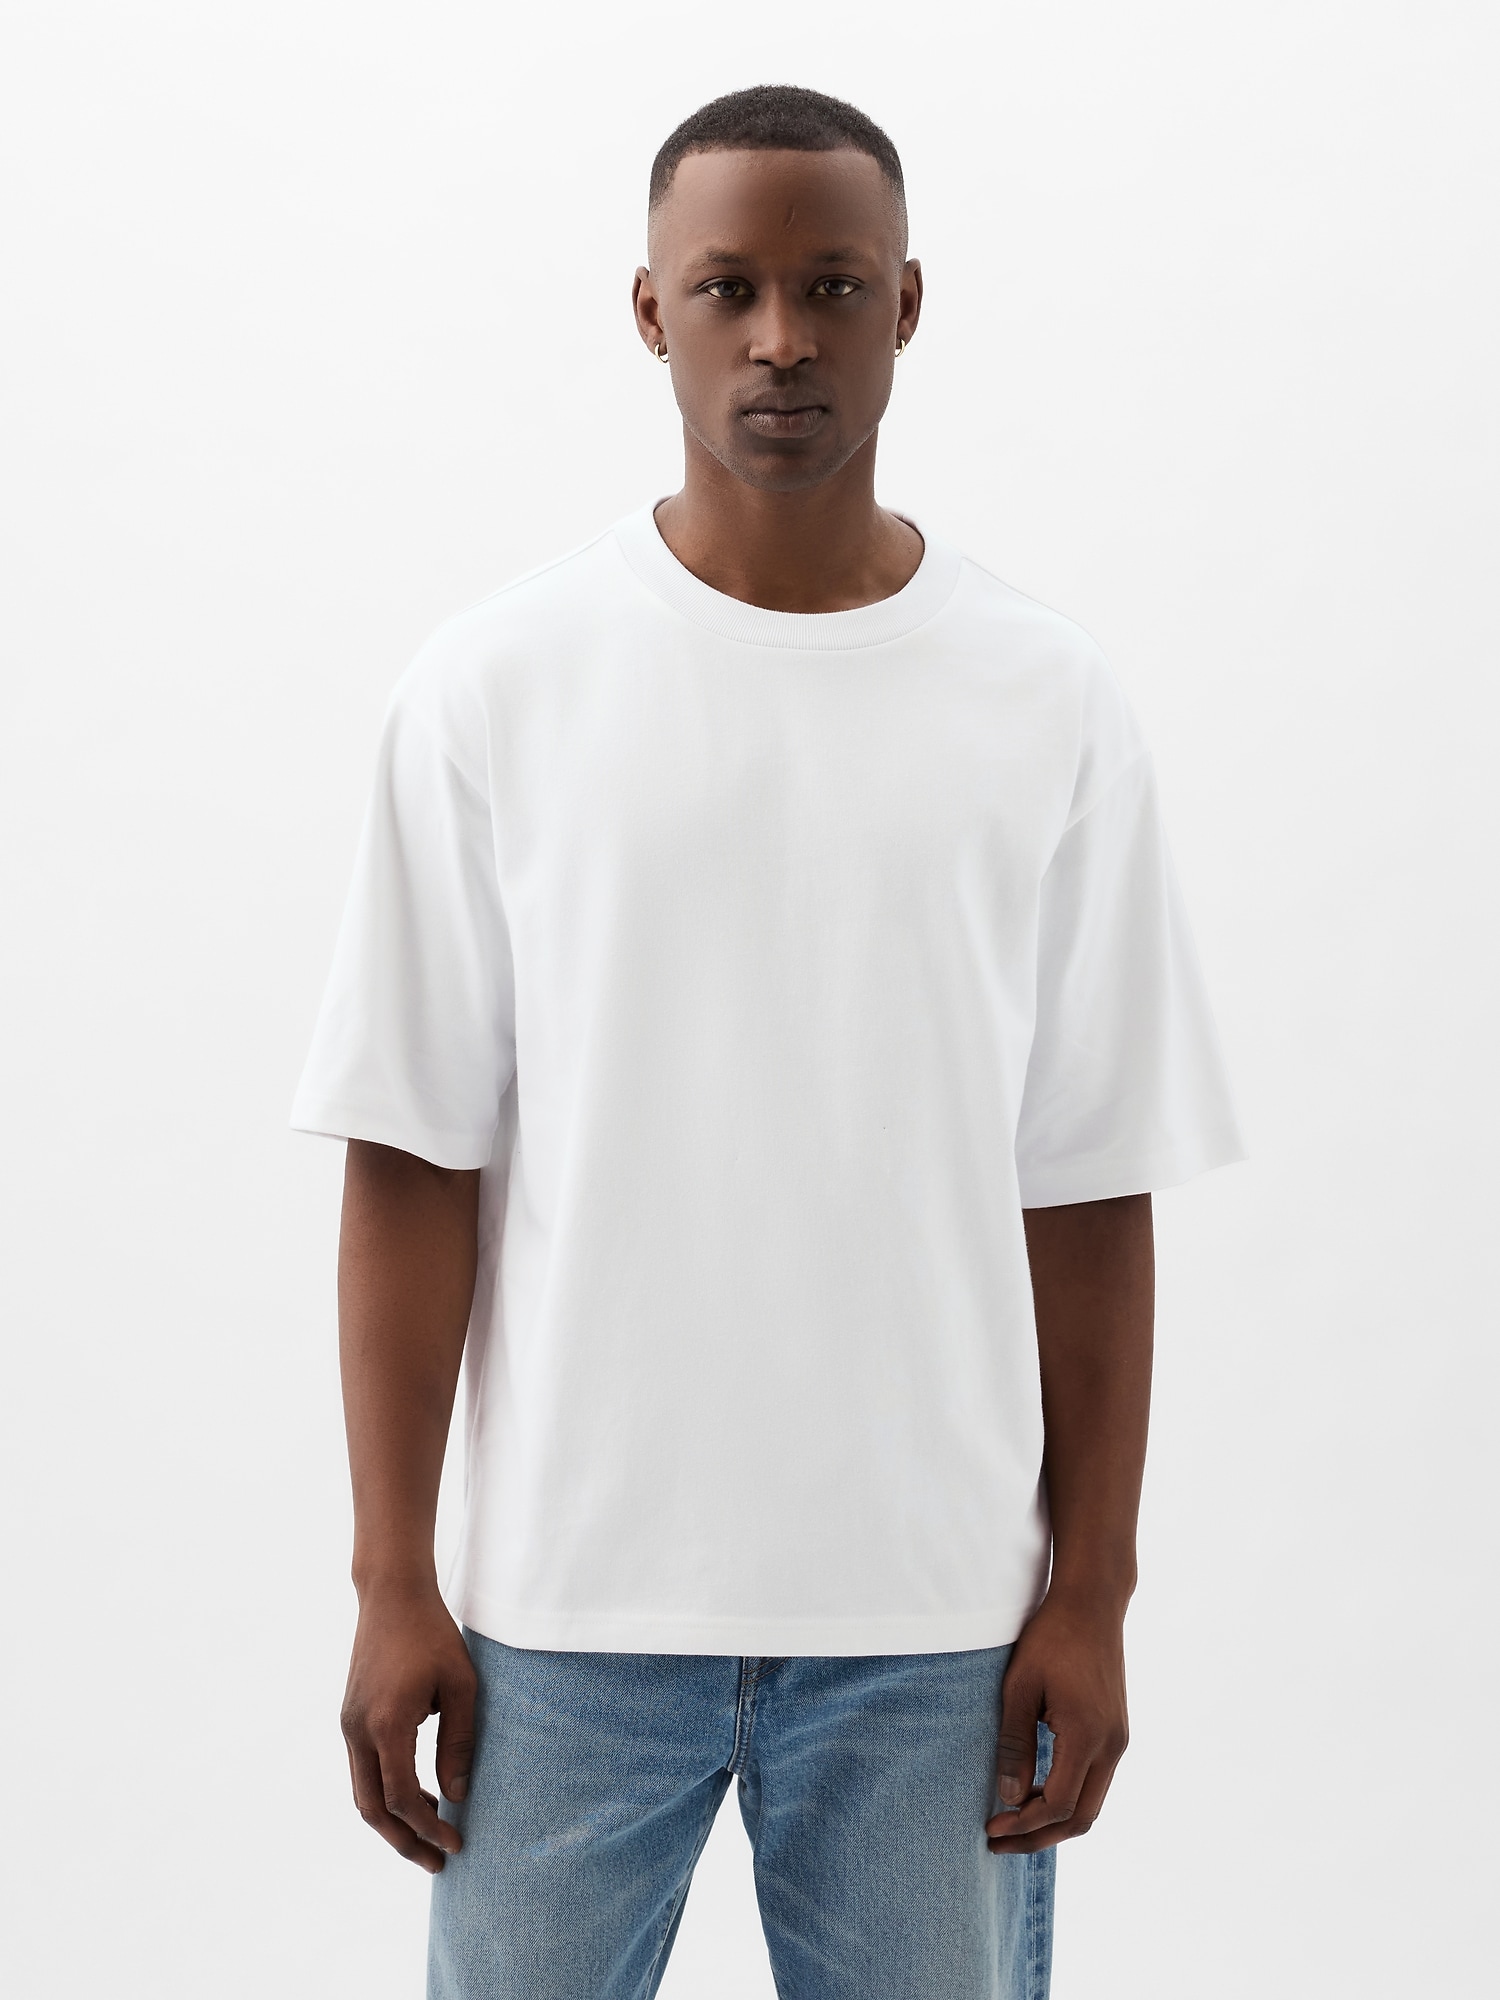 Tシャツ・トップス (ウィメンズ) | Gap公式オンラインストア